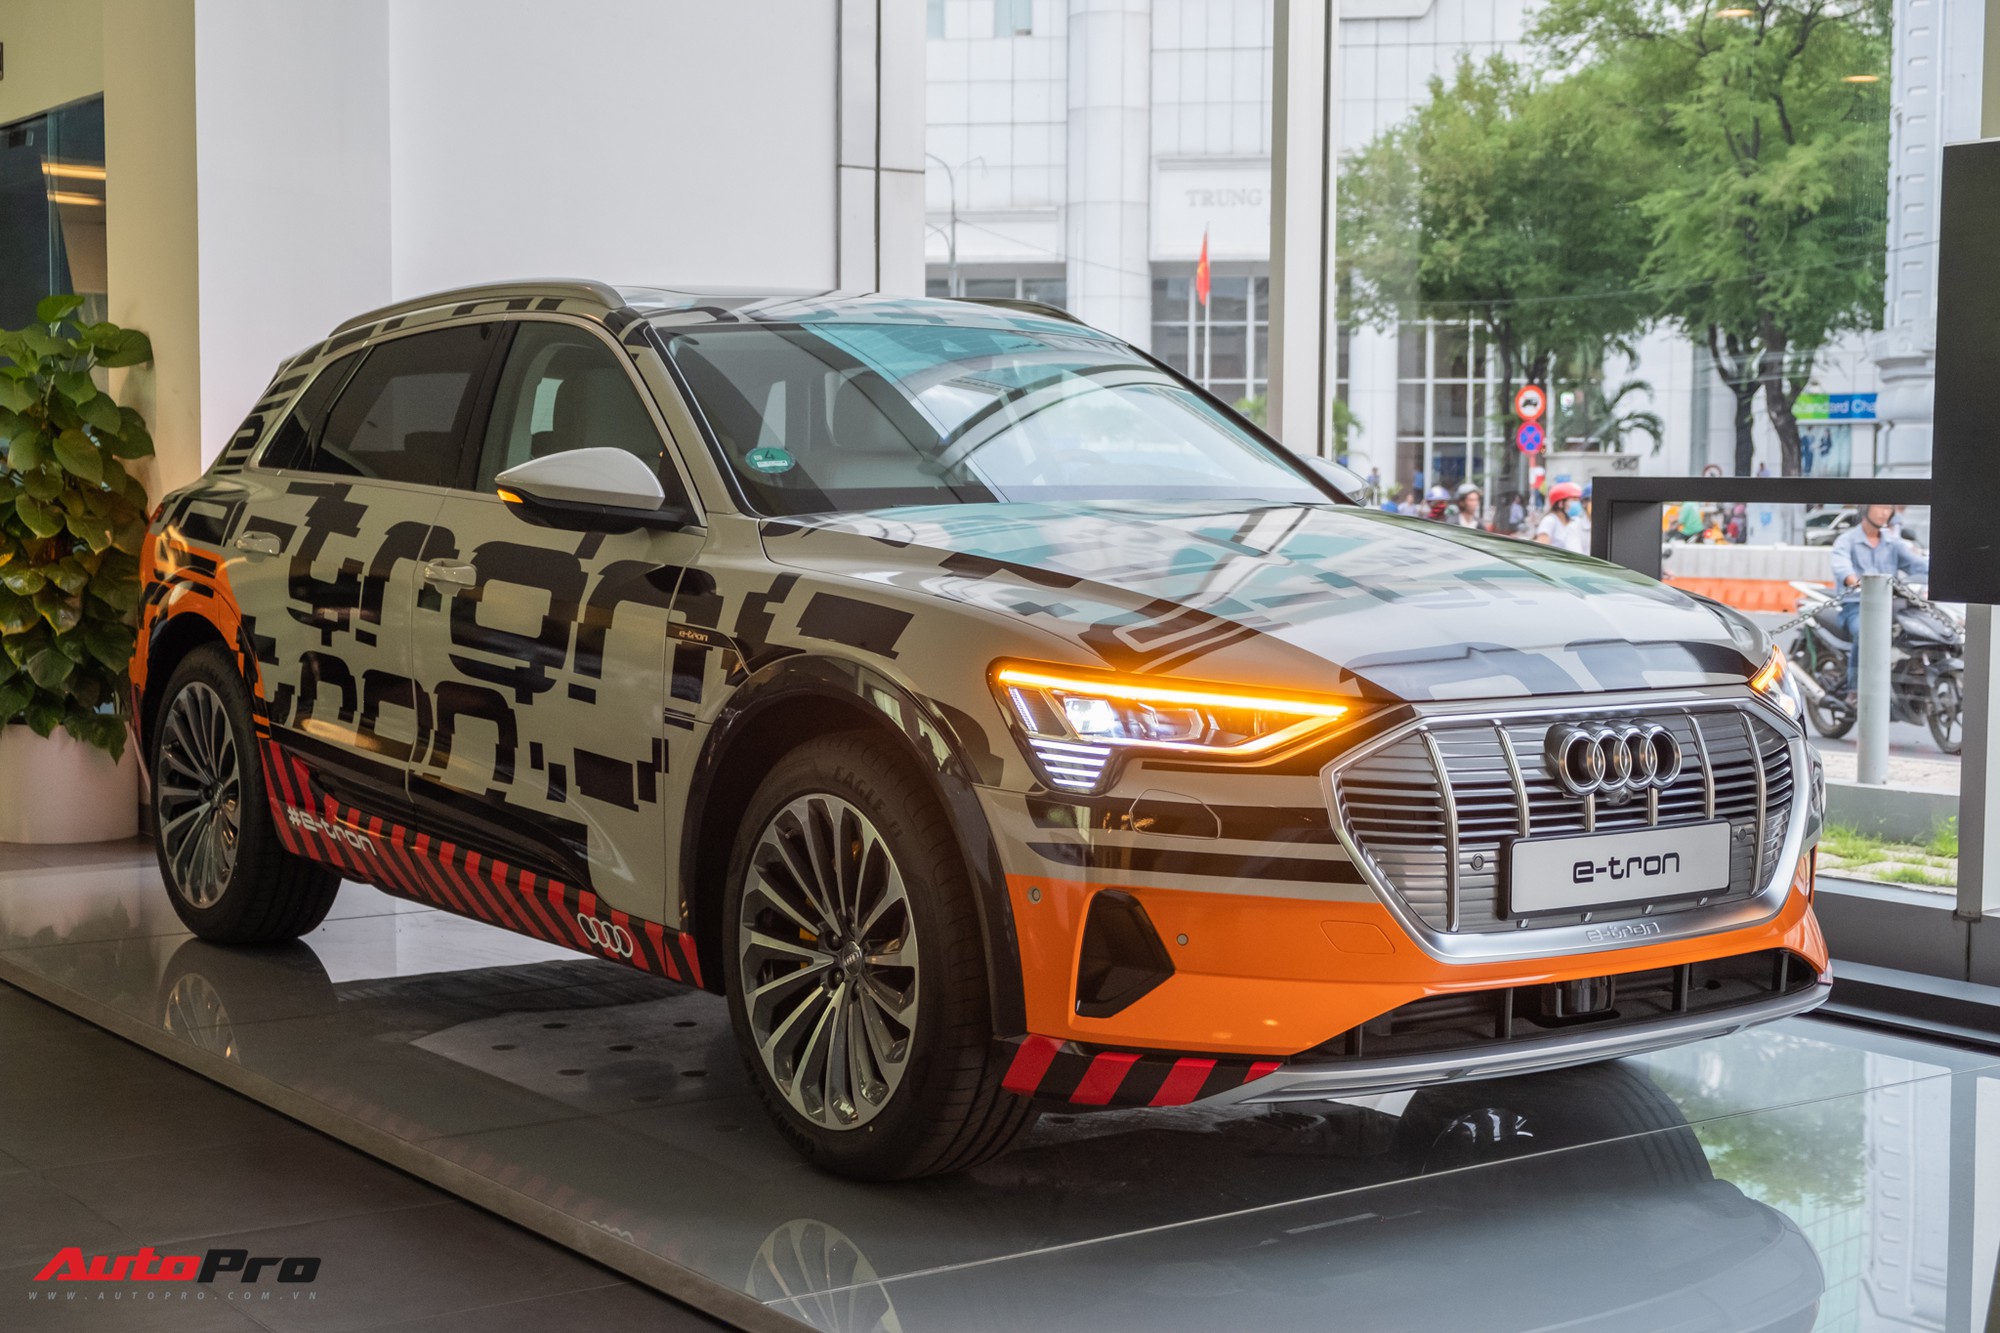 Audi e-tron sẽ chính thức xuất hiện tại Việt Nam vào năm 2024 với tính năng vượt trội và khả năng tiết kiệm năng lượng. Với sự phát triển của công nghệ, chiếc xe này sẽ là sự lựa chọn hàng đầu cho những người yêu thích công nghệ và cuộc sống bền vững, và sẽ mang lại nhiều trải nghiệm mới cho những người sở hữu.